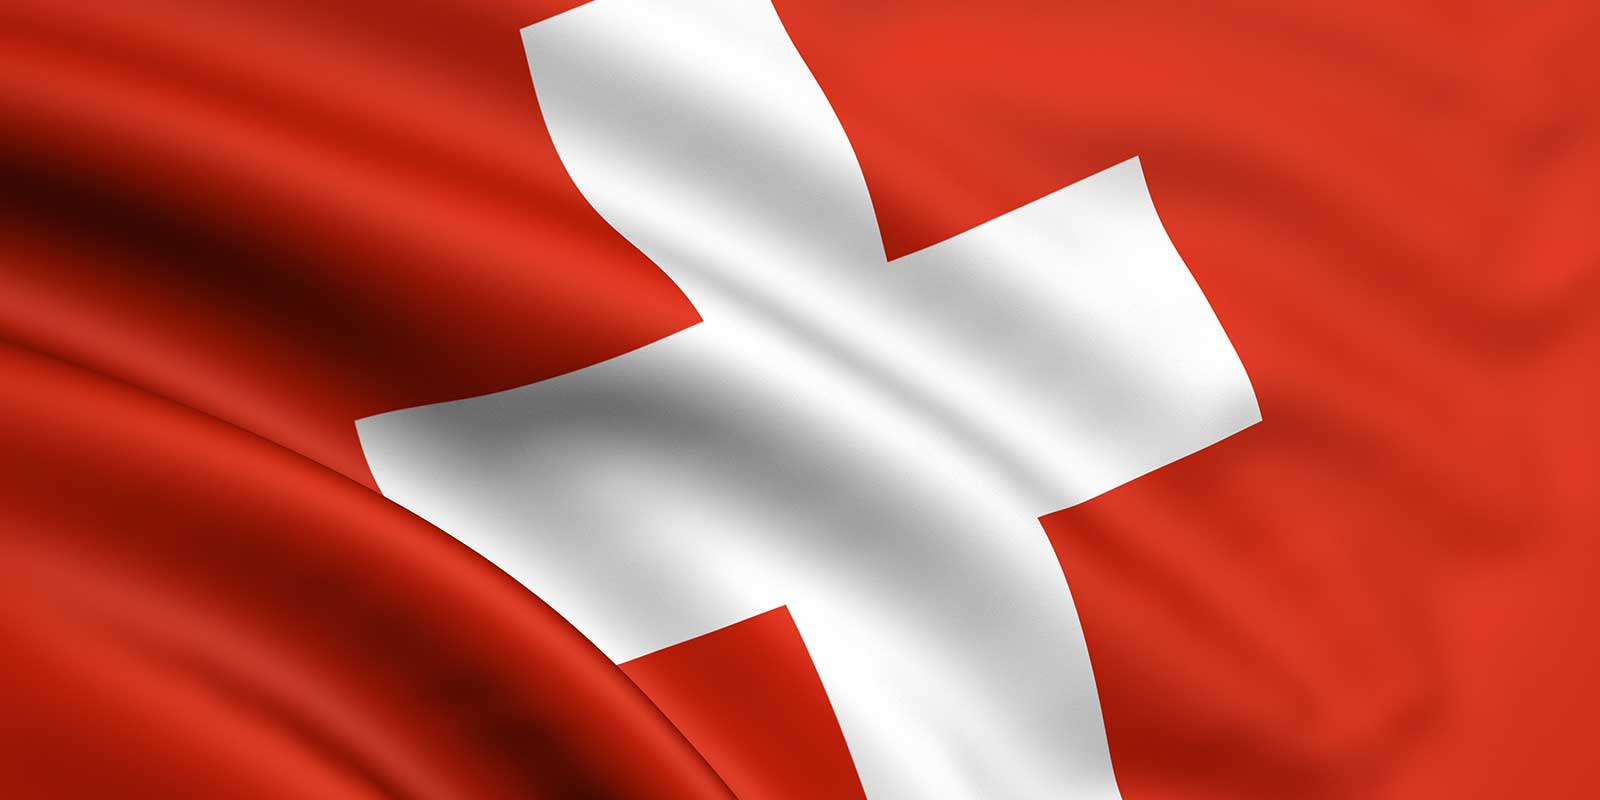 PENDLA: Vielversprechender Start in der Schweiz